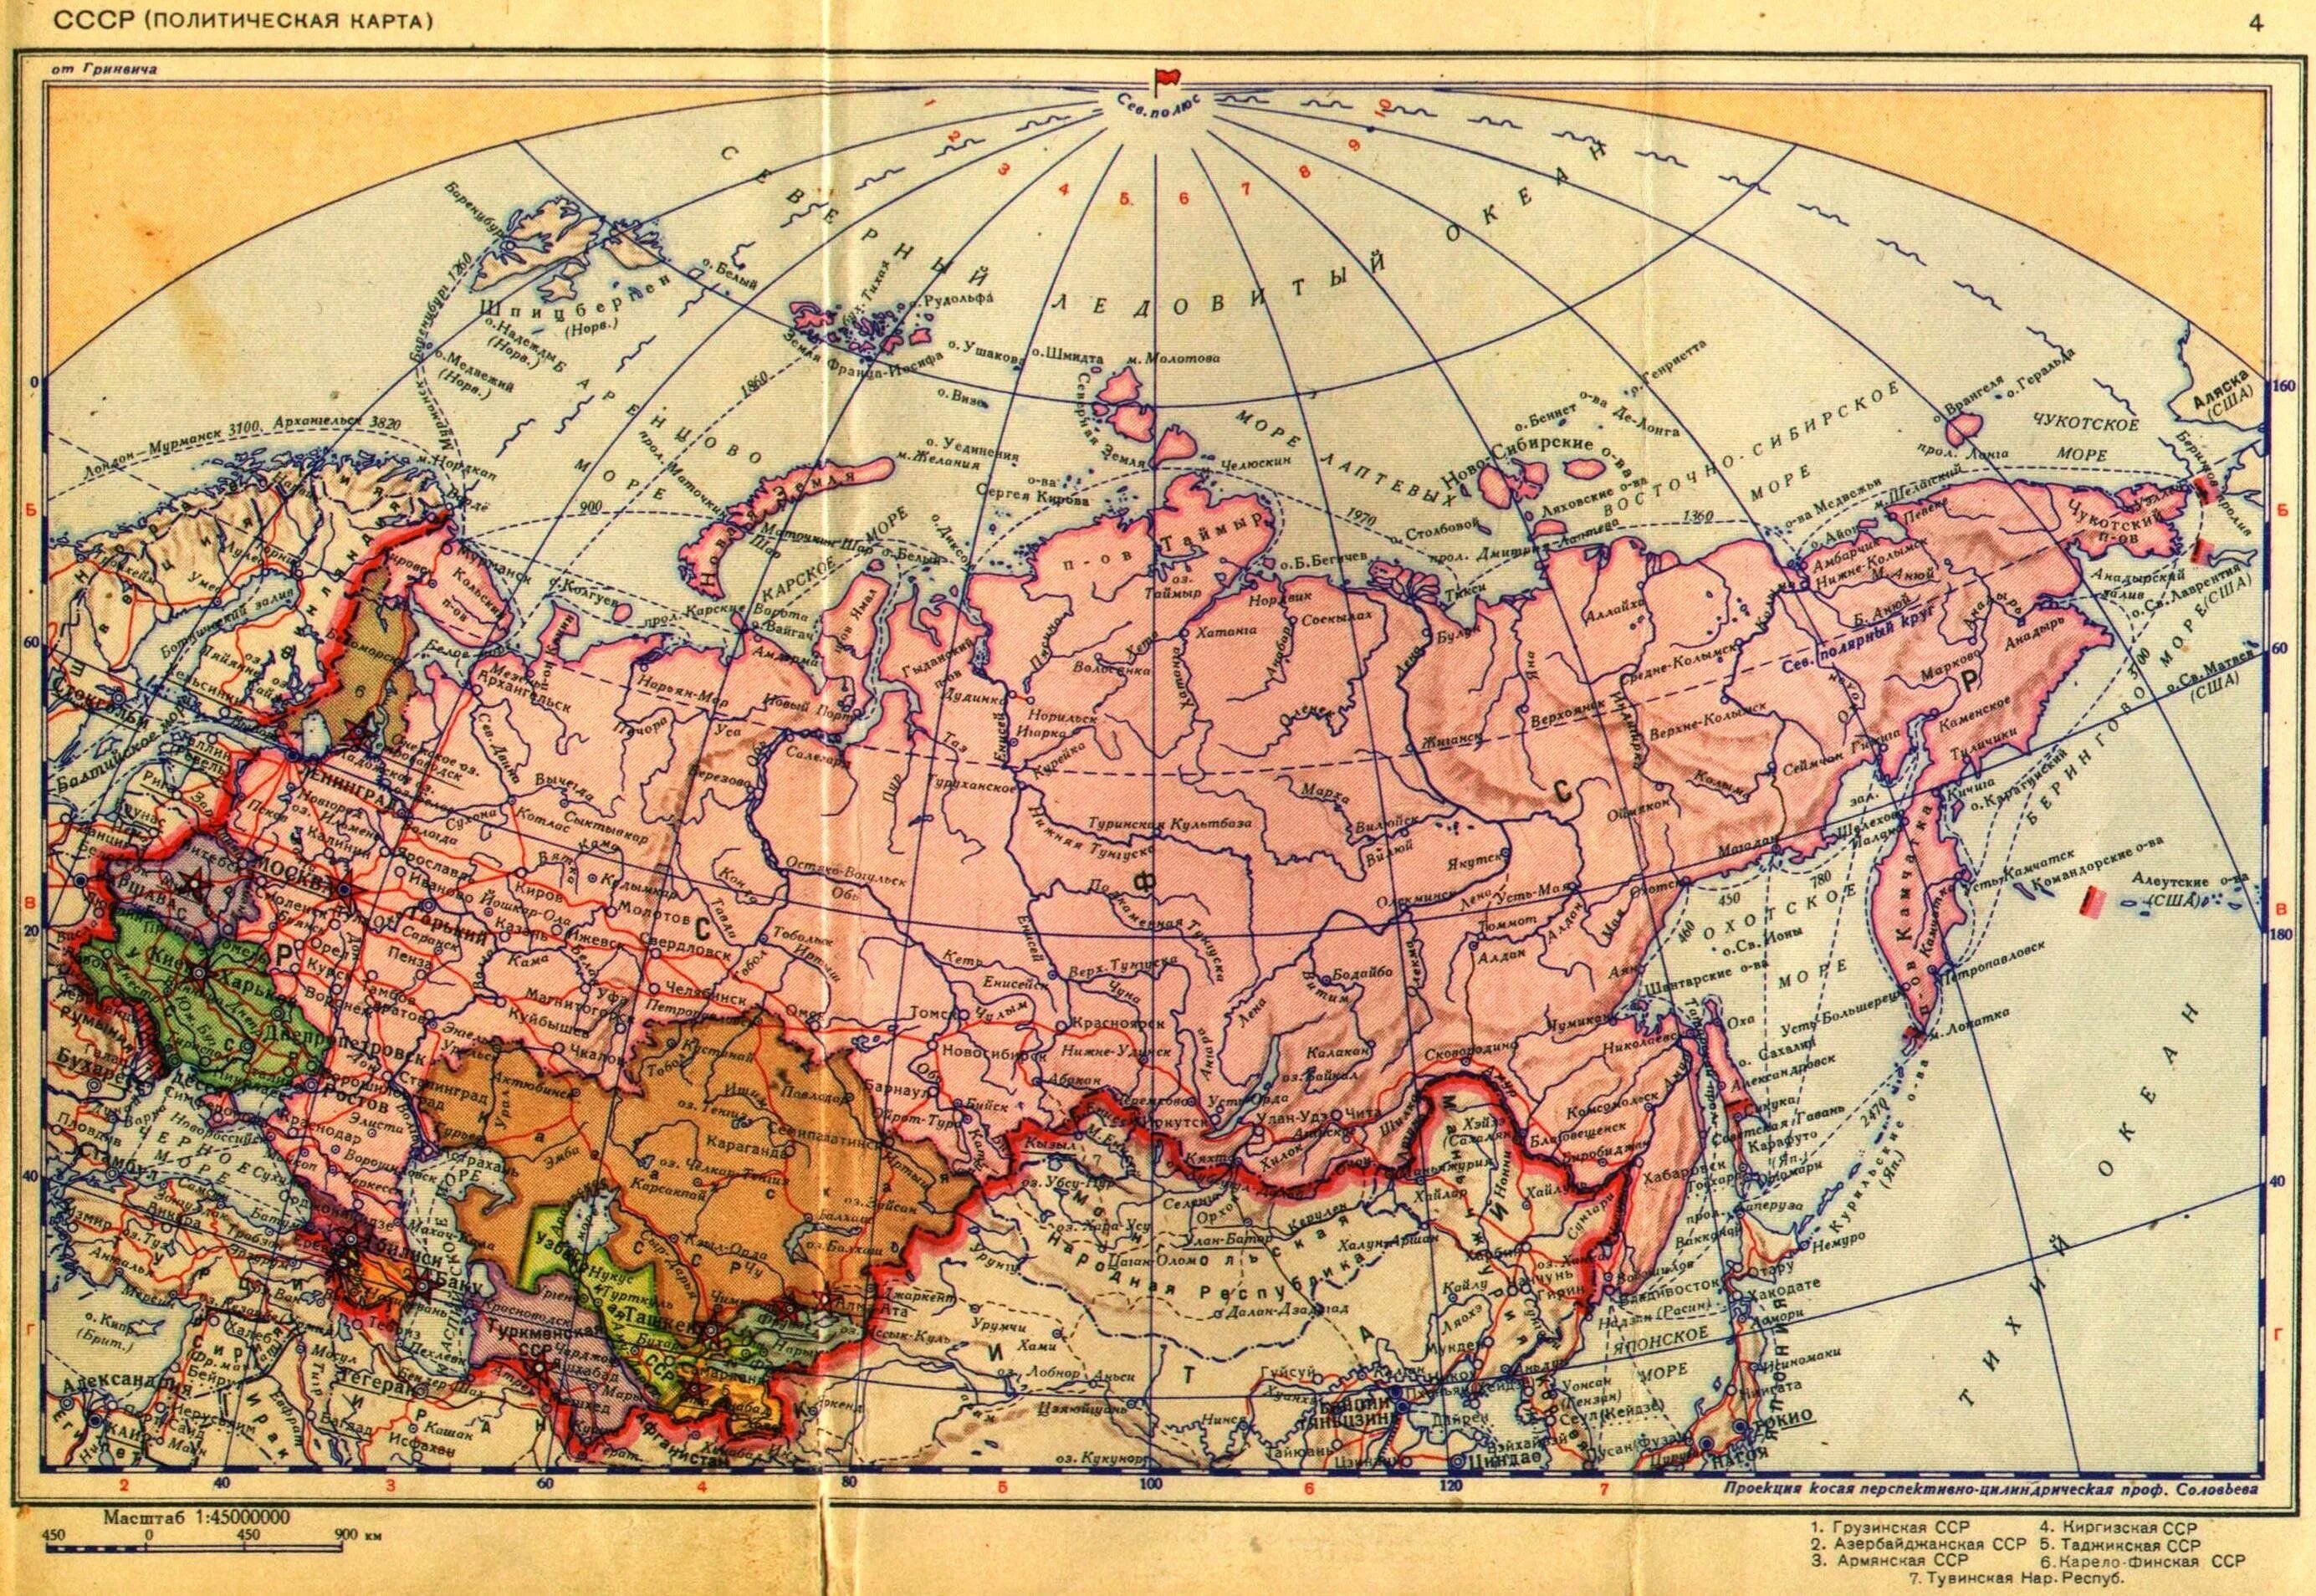 Карта СССР С республиками 1950. Карта СССР 1940 года. Карта СССР 1989 года с республиками. Карта СССР 1980 года границы СССР.